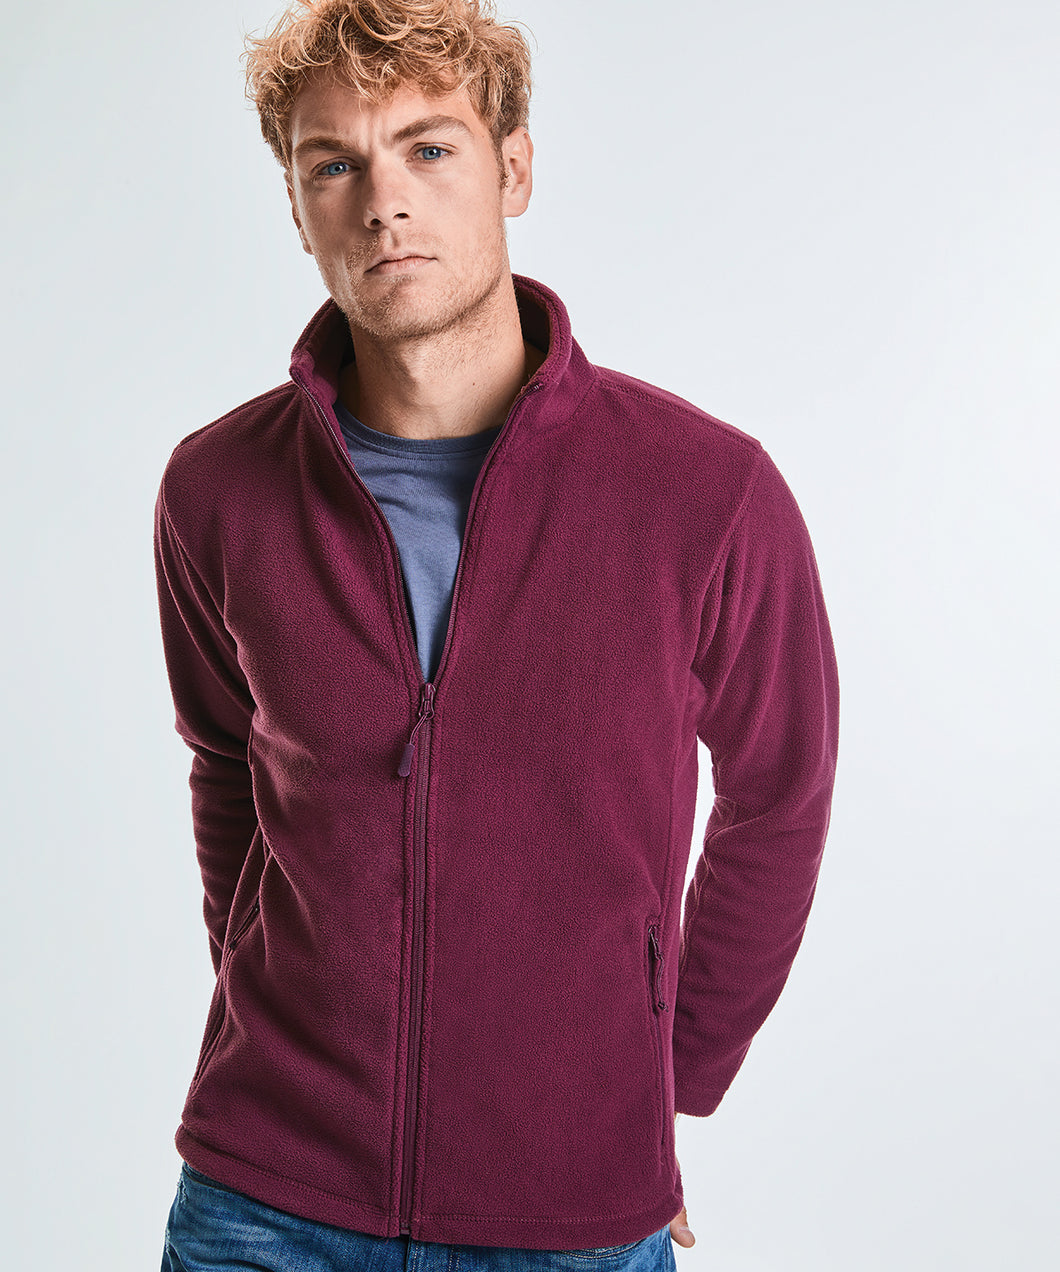 Embroidered - Full-zip outdoor fleece